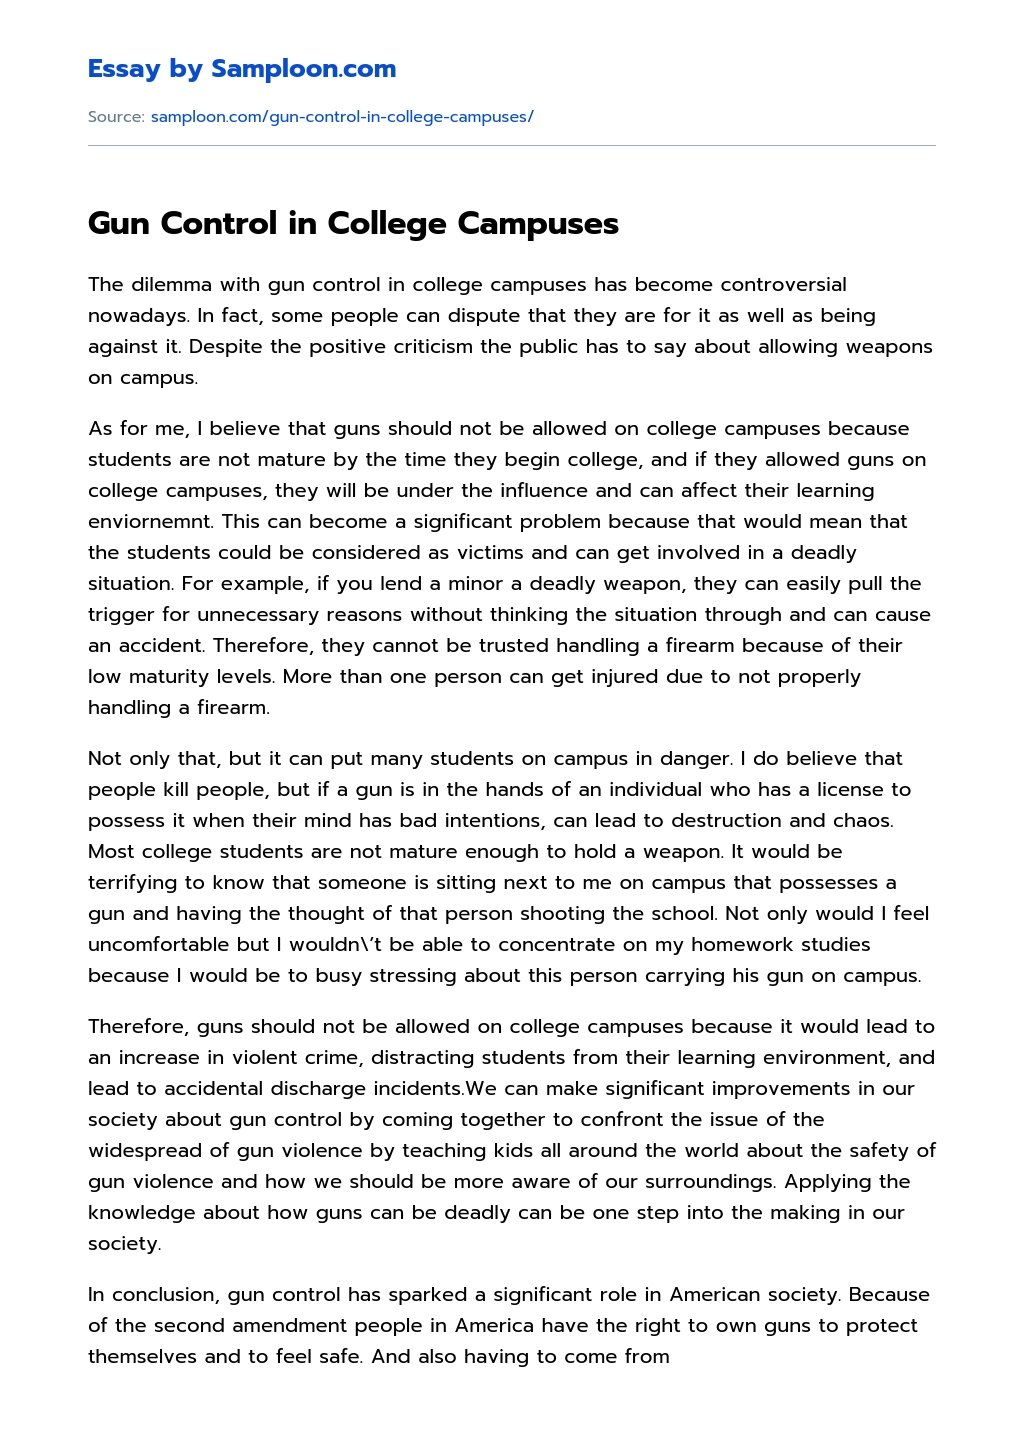 Gun Control in College Campuses essay